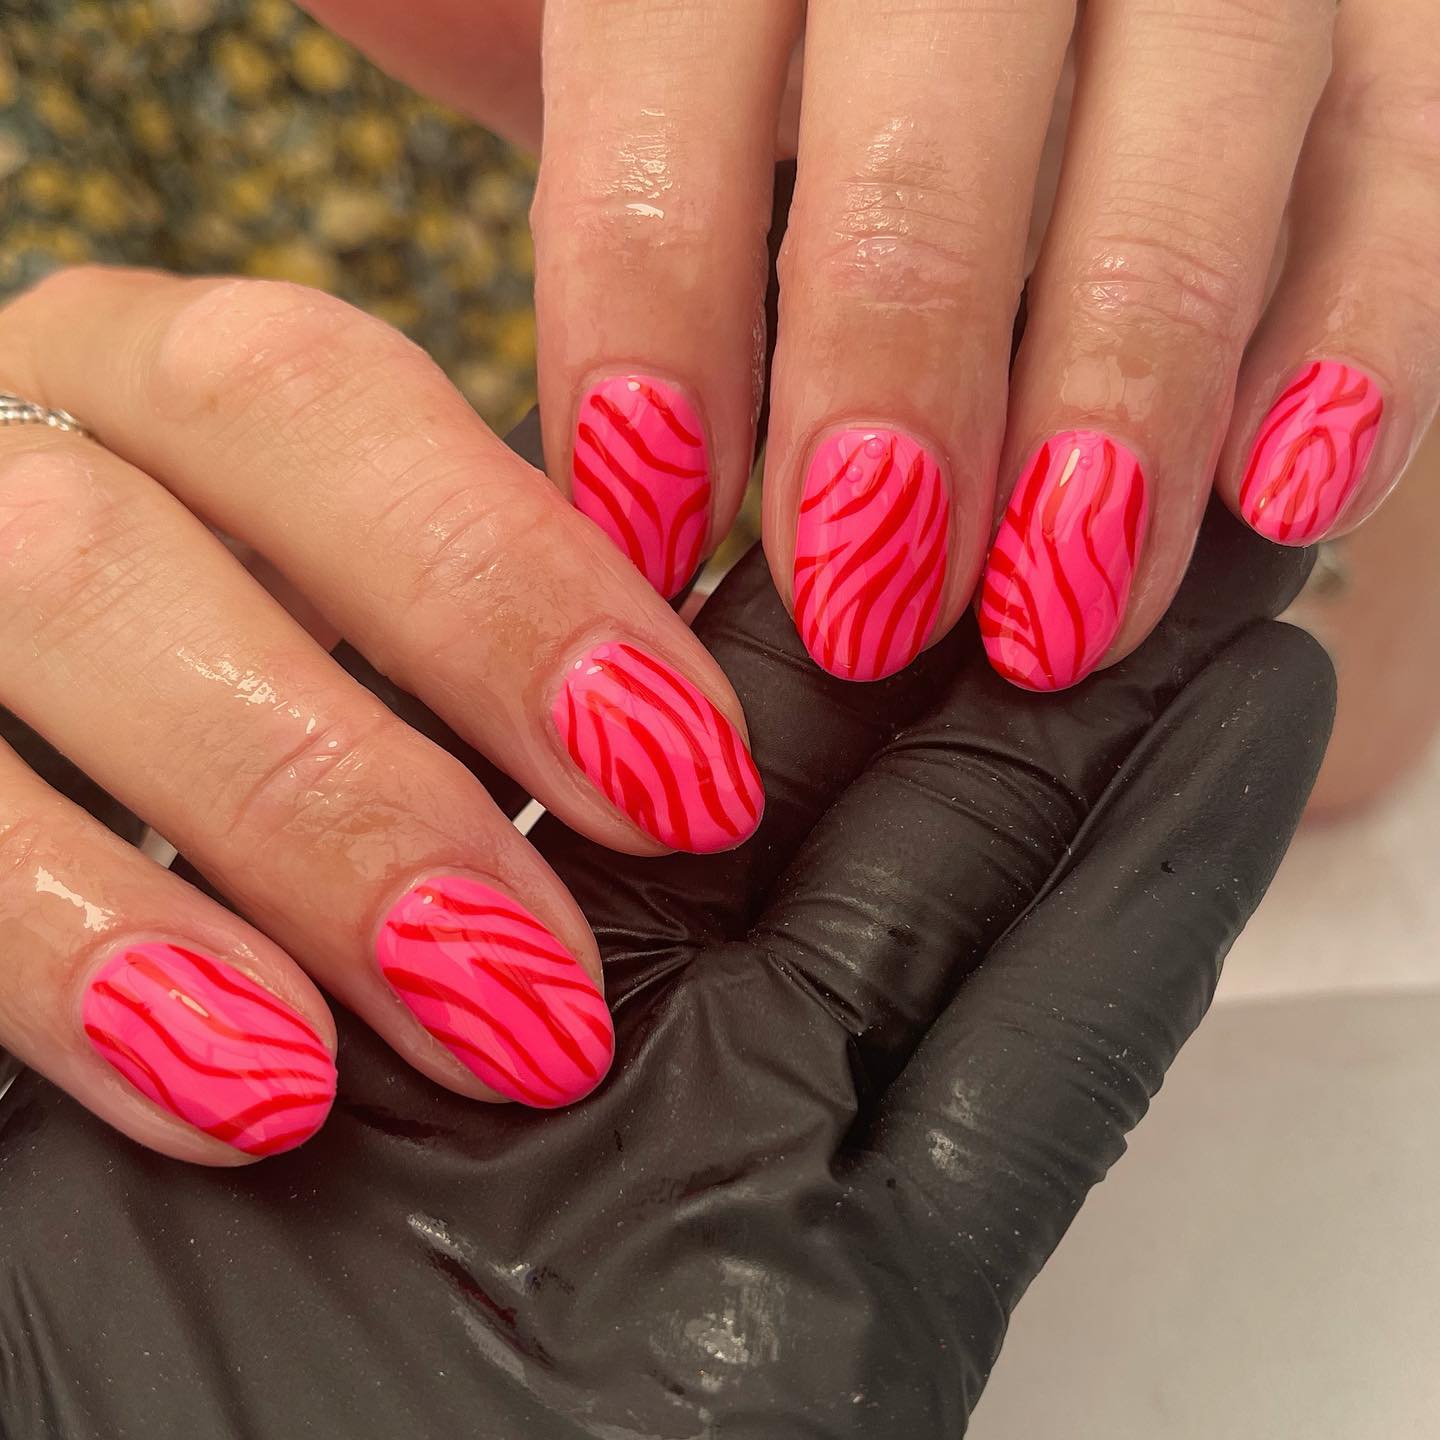 Summer nail art ideas to rock in 2021 : Hot pink cheetah nails